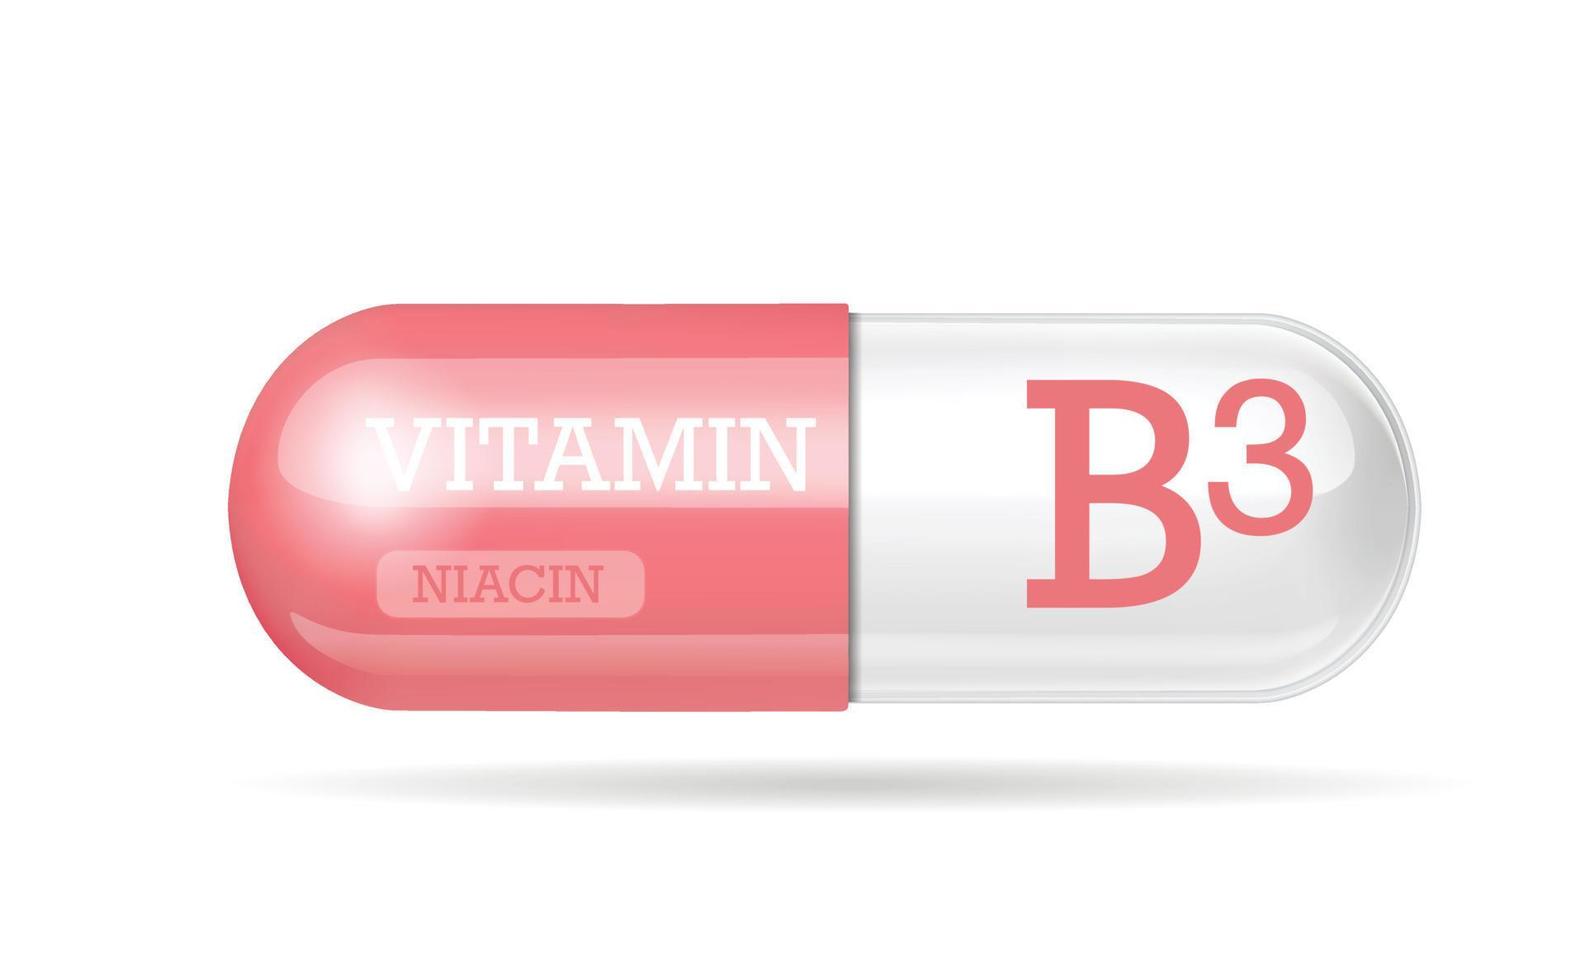 vitamina b3, compressa, capsula vitaminica. capsula bicolore rosa e bianca. copia spazio. illustrazione vettoriale